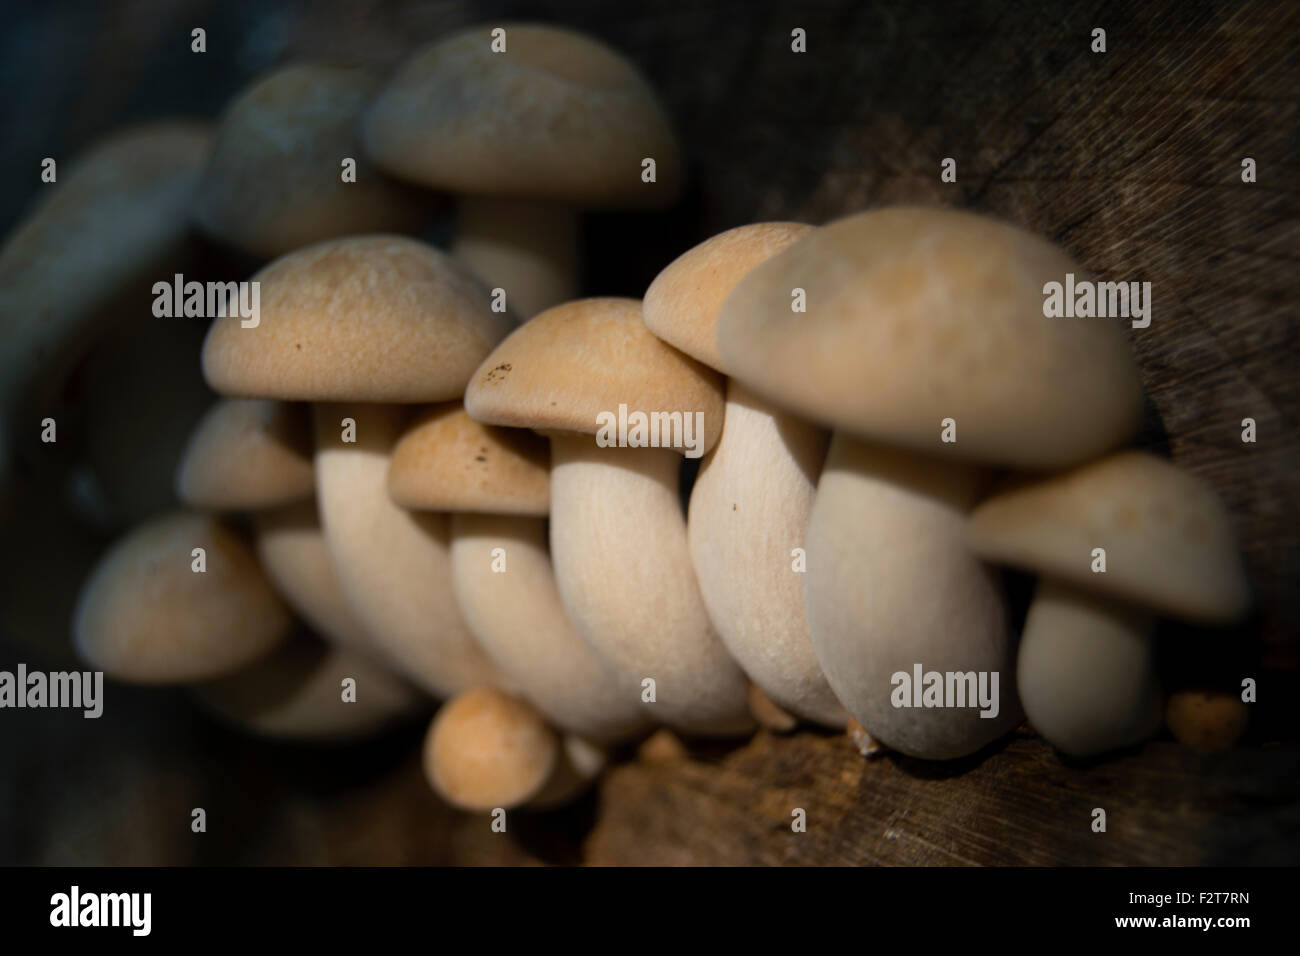 Les champignons, fruit d'un arbre en décomposition Banque D'Images